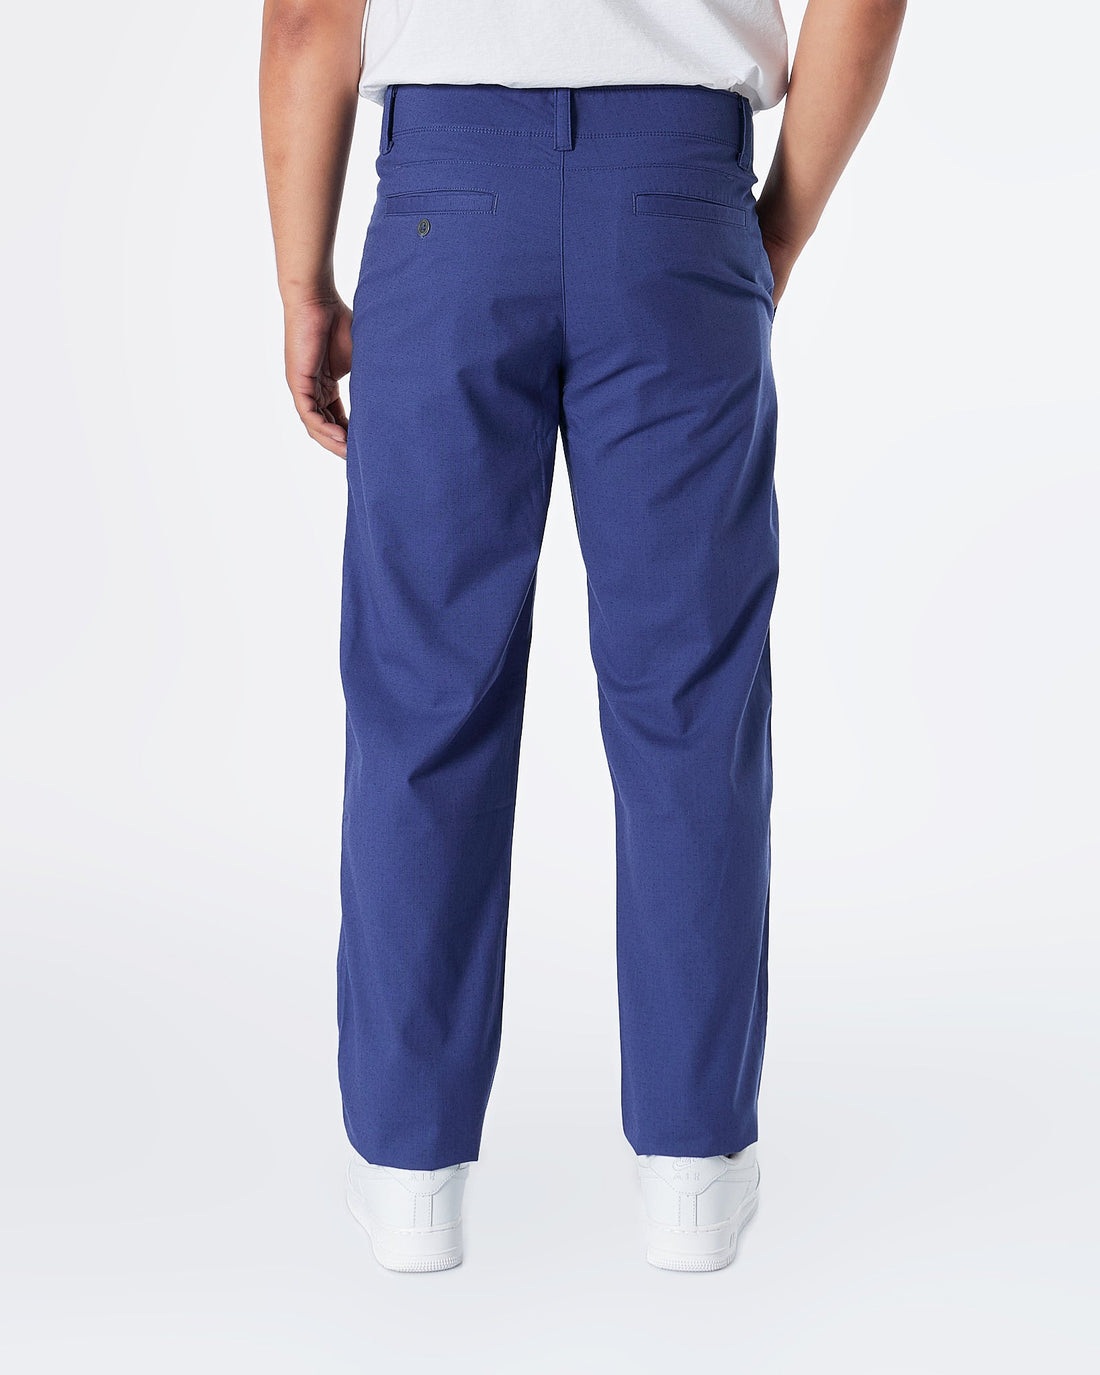 MOI OUTFIT-UA Casual Fit Men Blue Khaki Pants 28.90